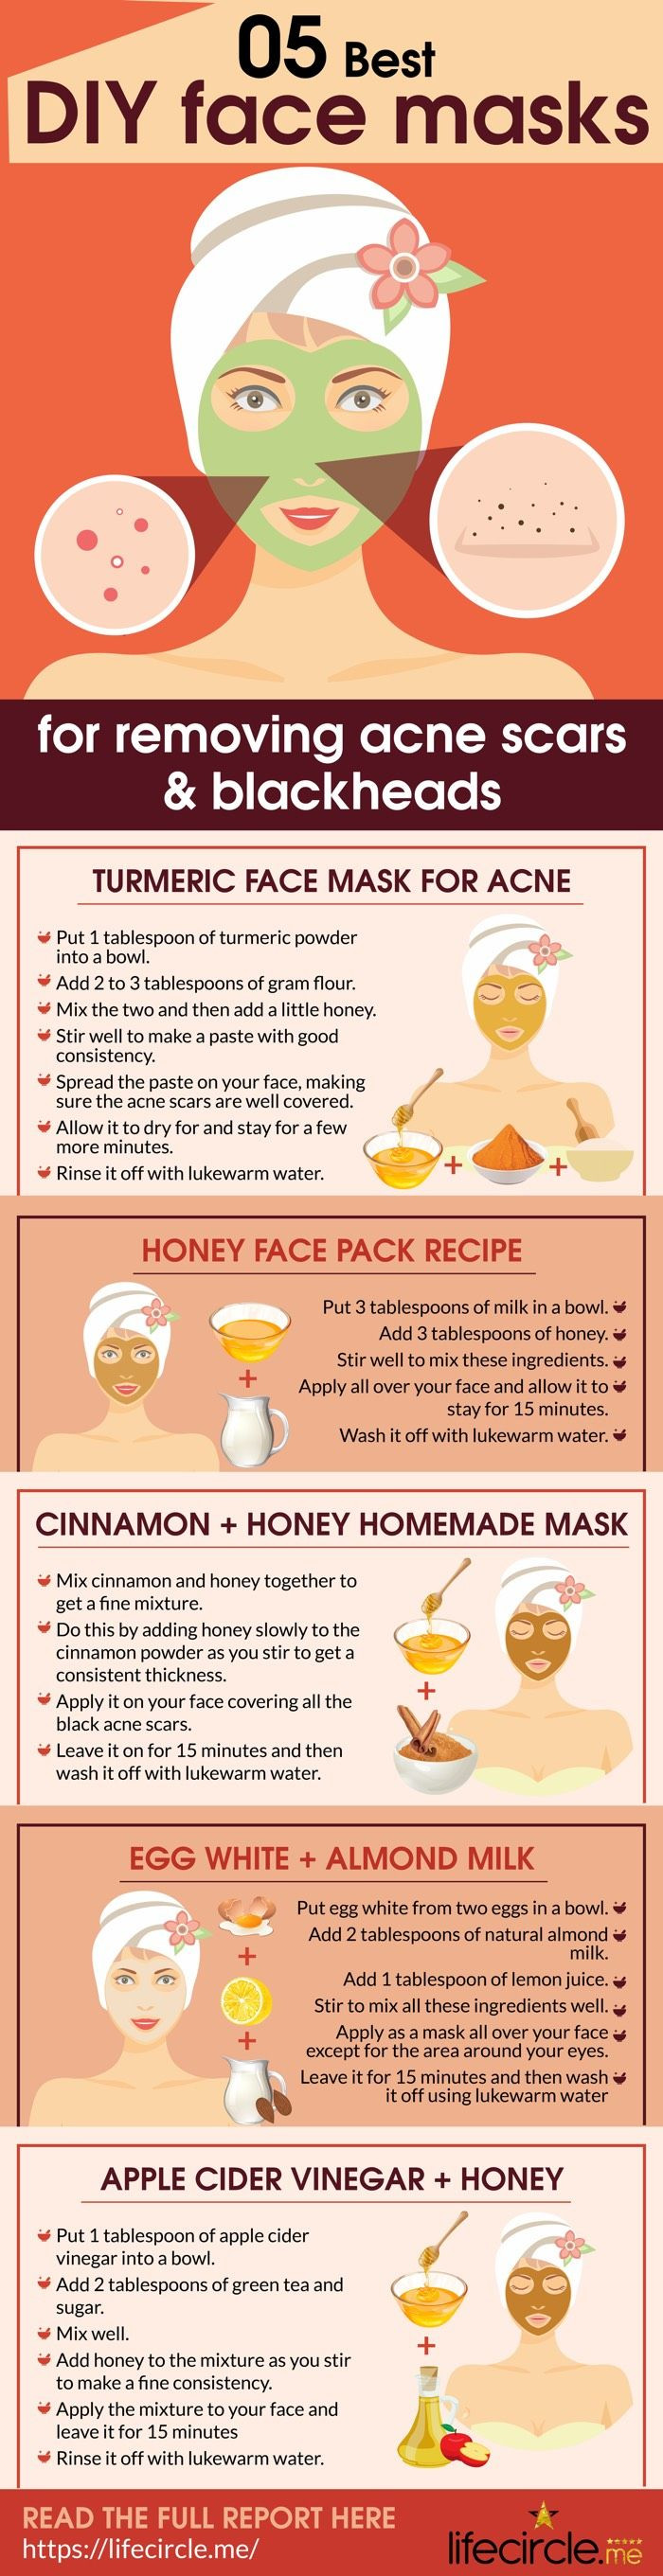 Acne Mask DIY
 10 Best Face Masks for Acne Scars Drugstore & DIY